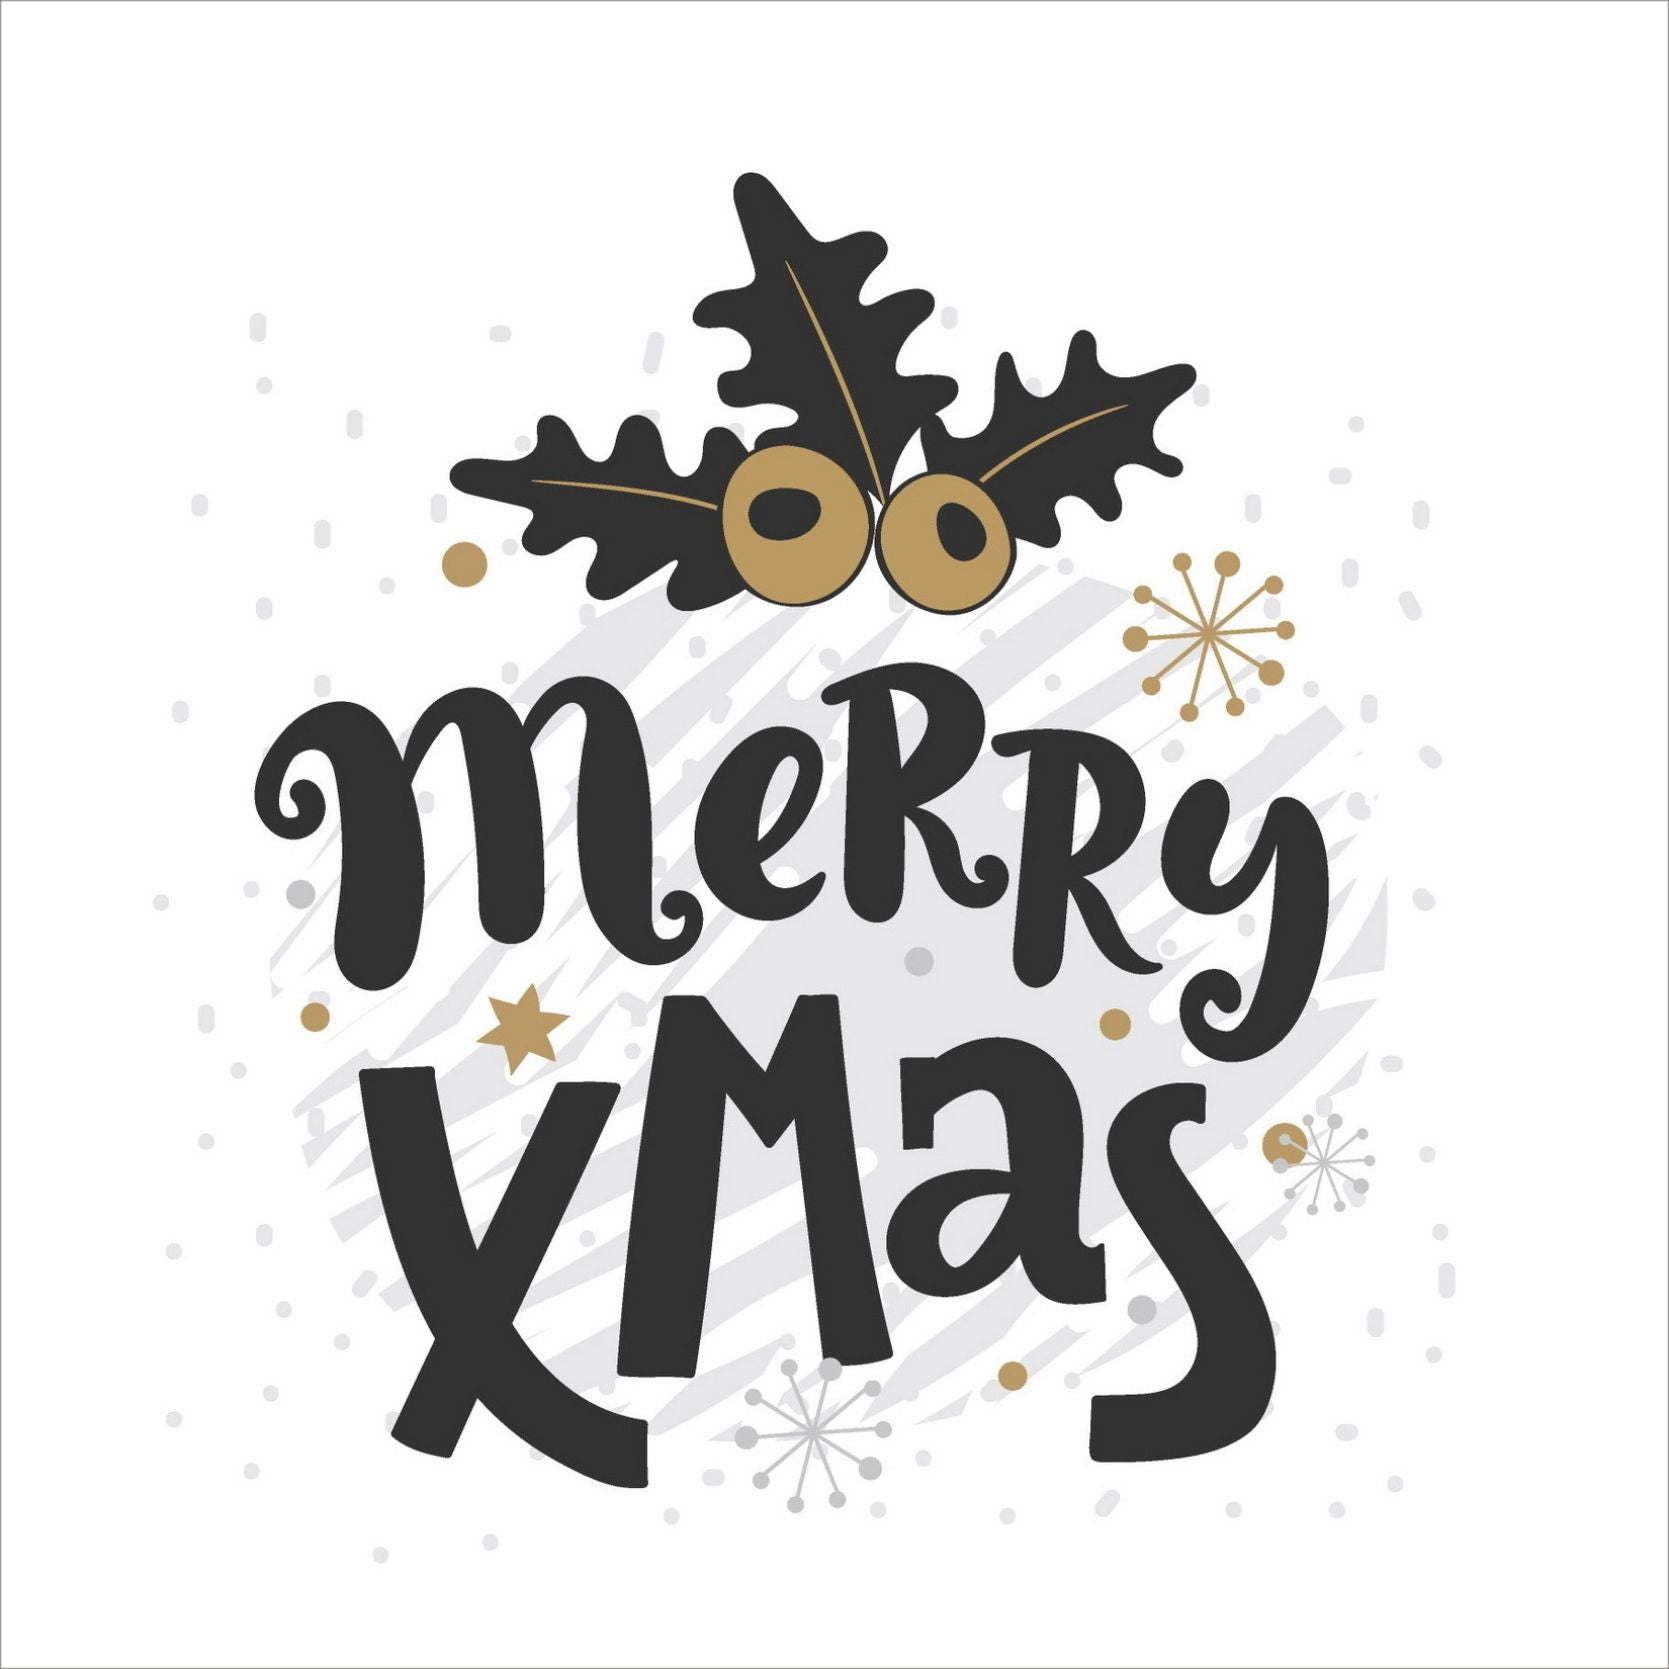 Søte julekort i håndtegnet cartoon. 10 pk. Fargemyanser i grå, sort, hvit og gull.  Nmotiv av laurbær. Tekst på kort "merry xmas"